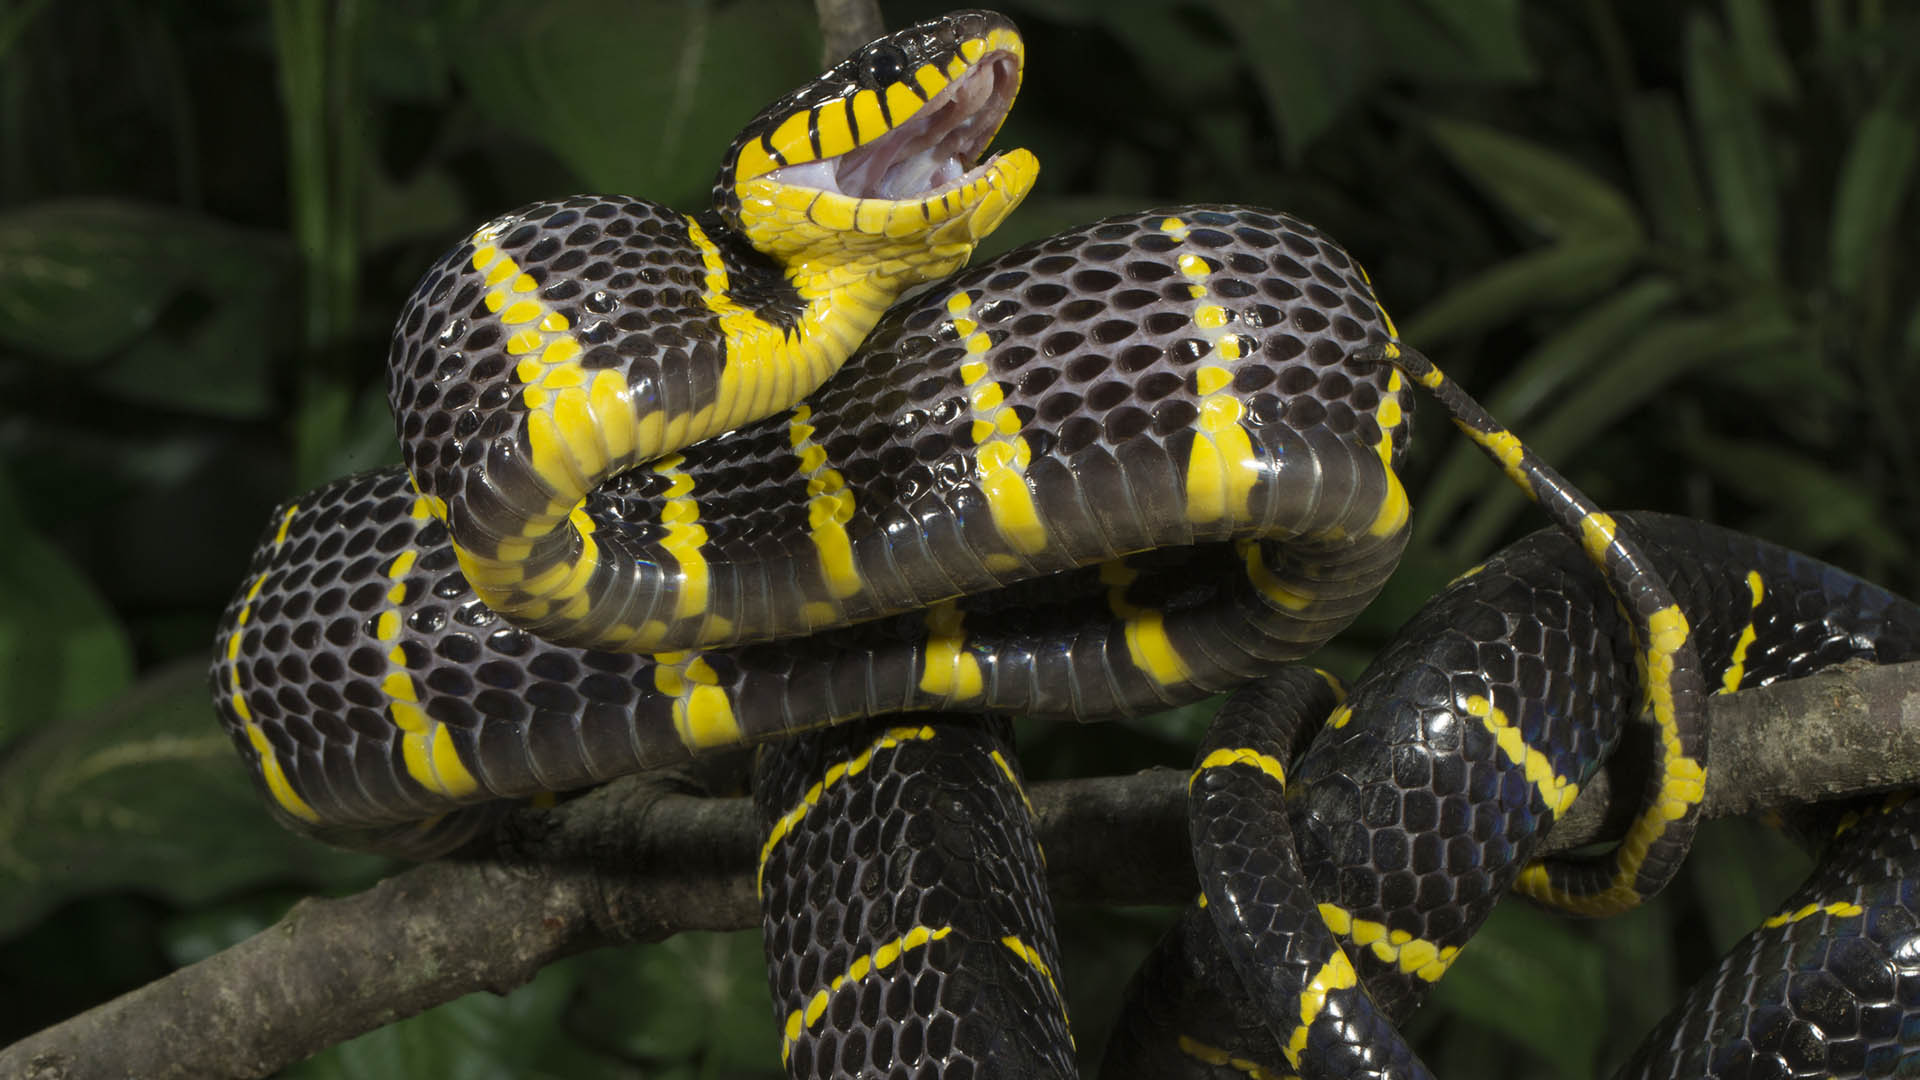 La serpiente de manglar habita en el continente asiático y se alimenta principalmente de aves (Getty Images)